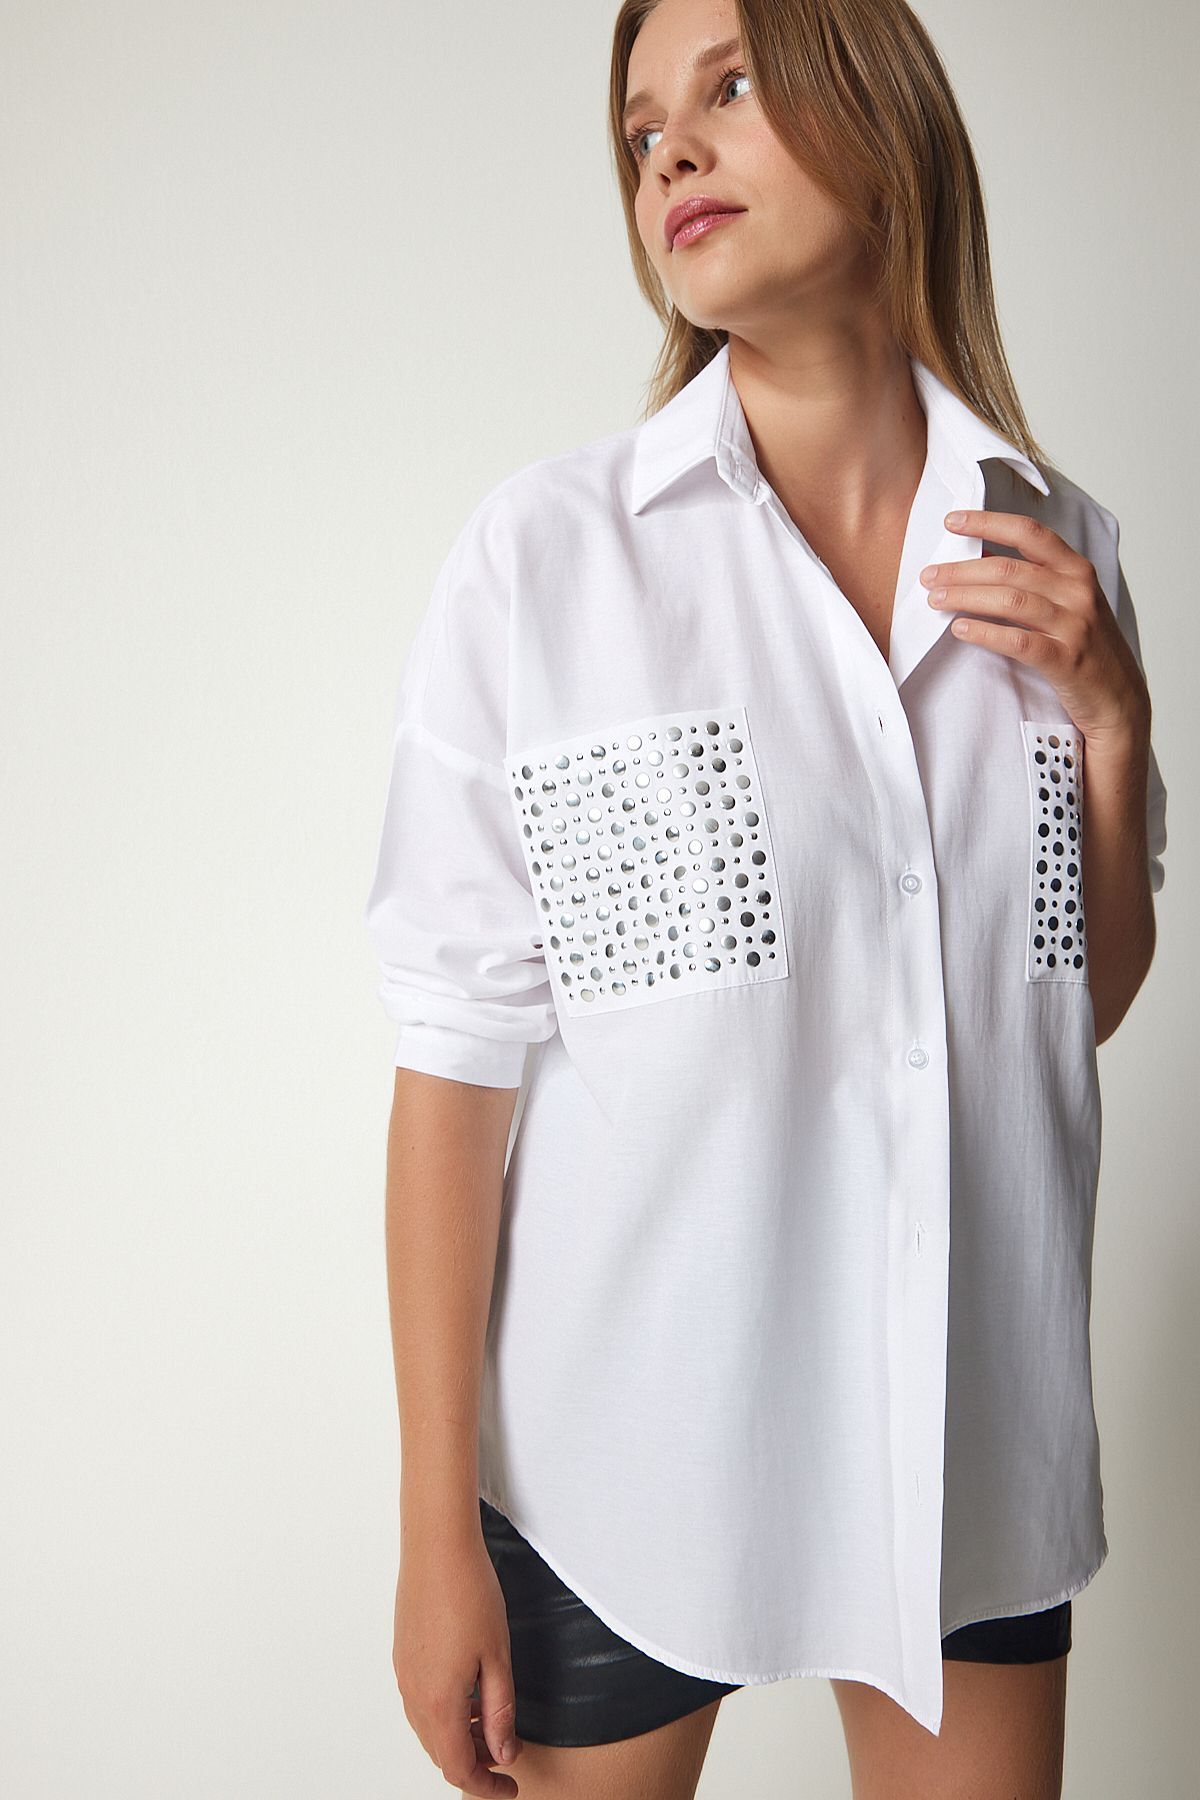 ALESGEROV Kadın Beyaz Metal Cep Detaylı Oversize Dokuma Gömlek